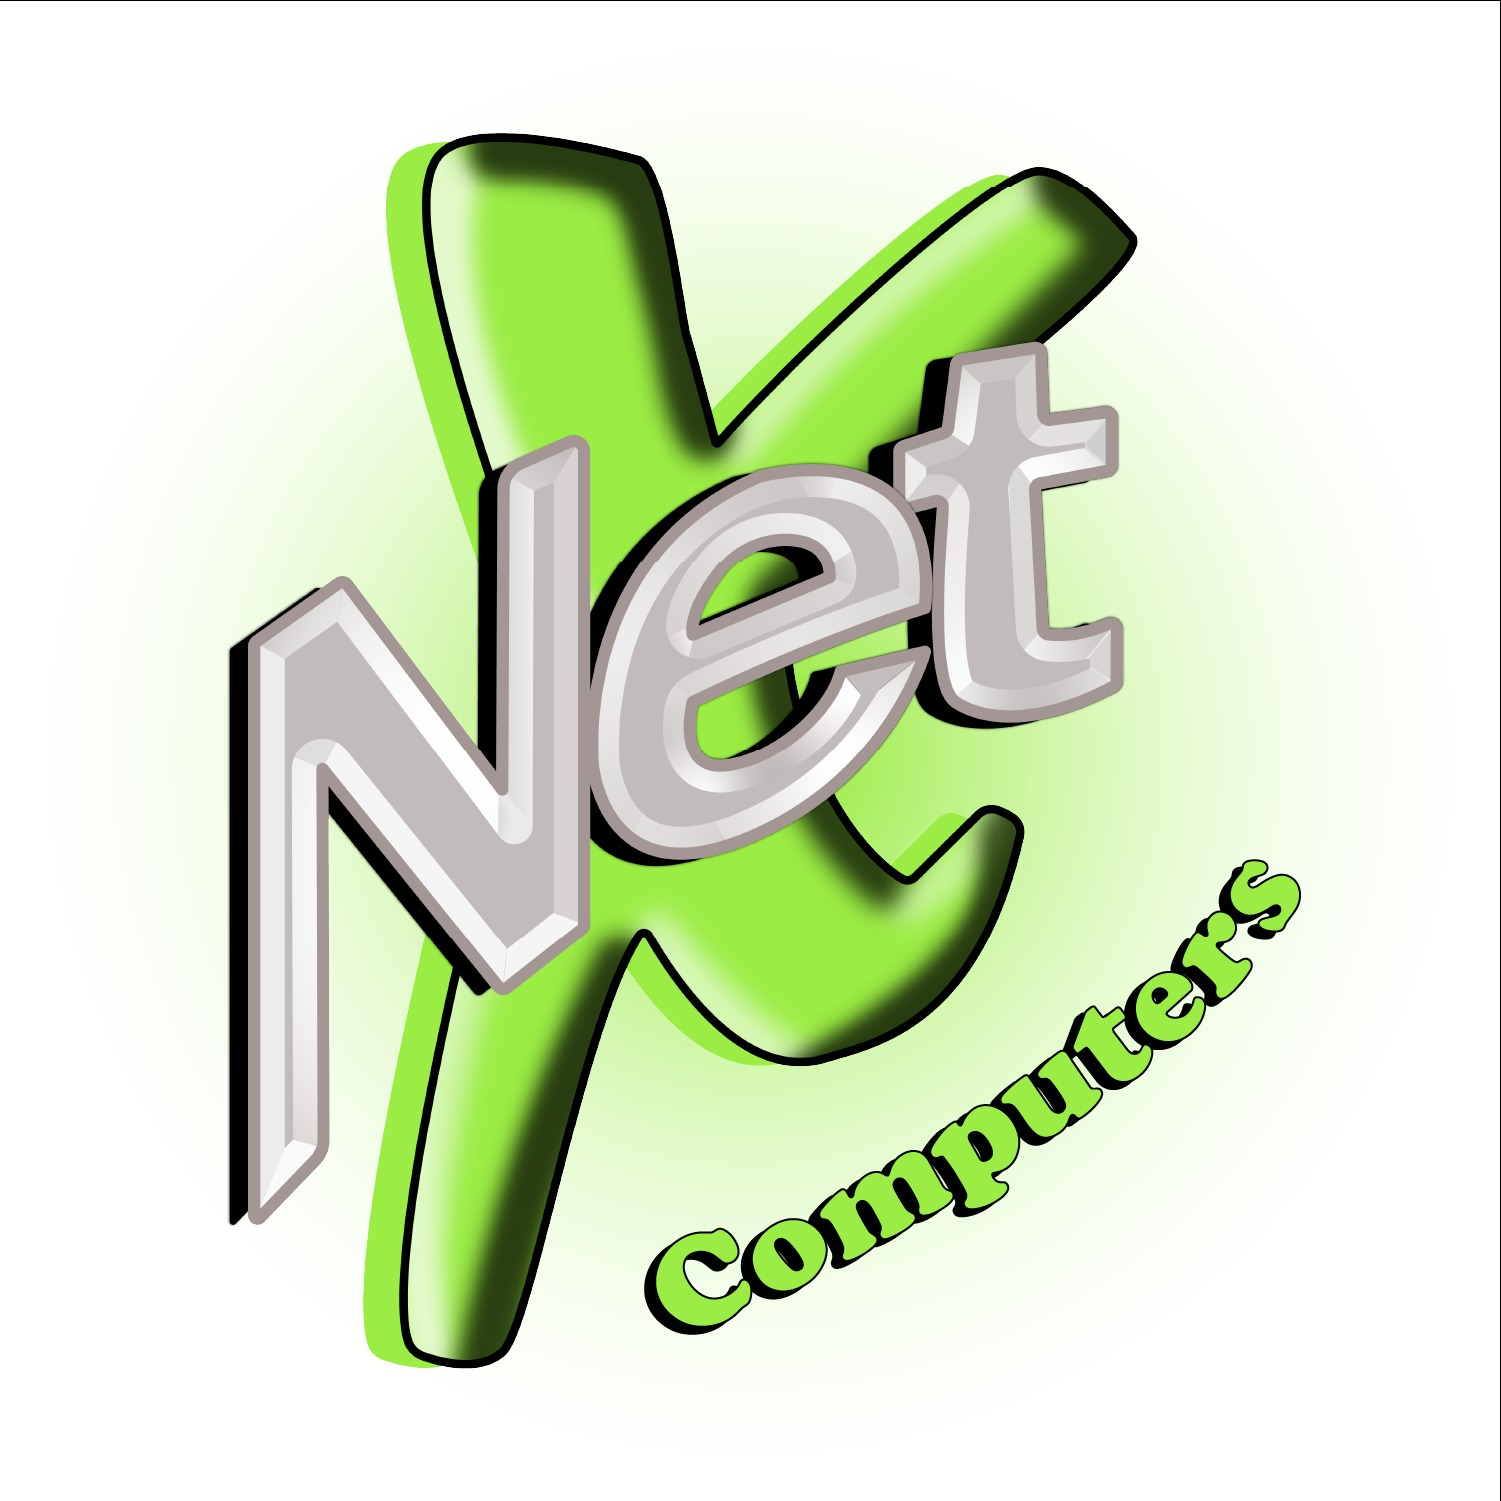 Net X Computers